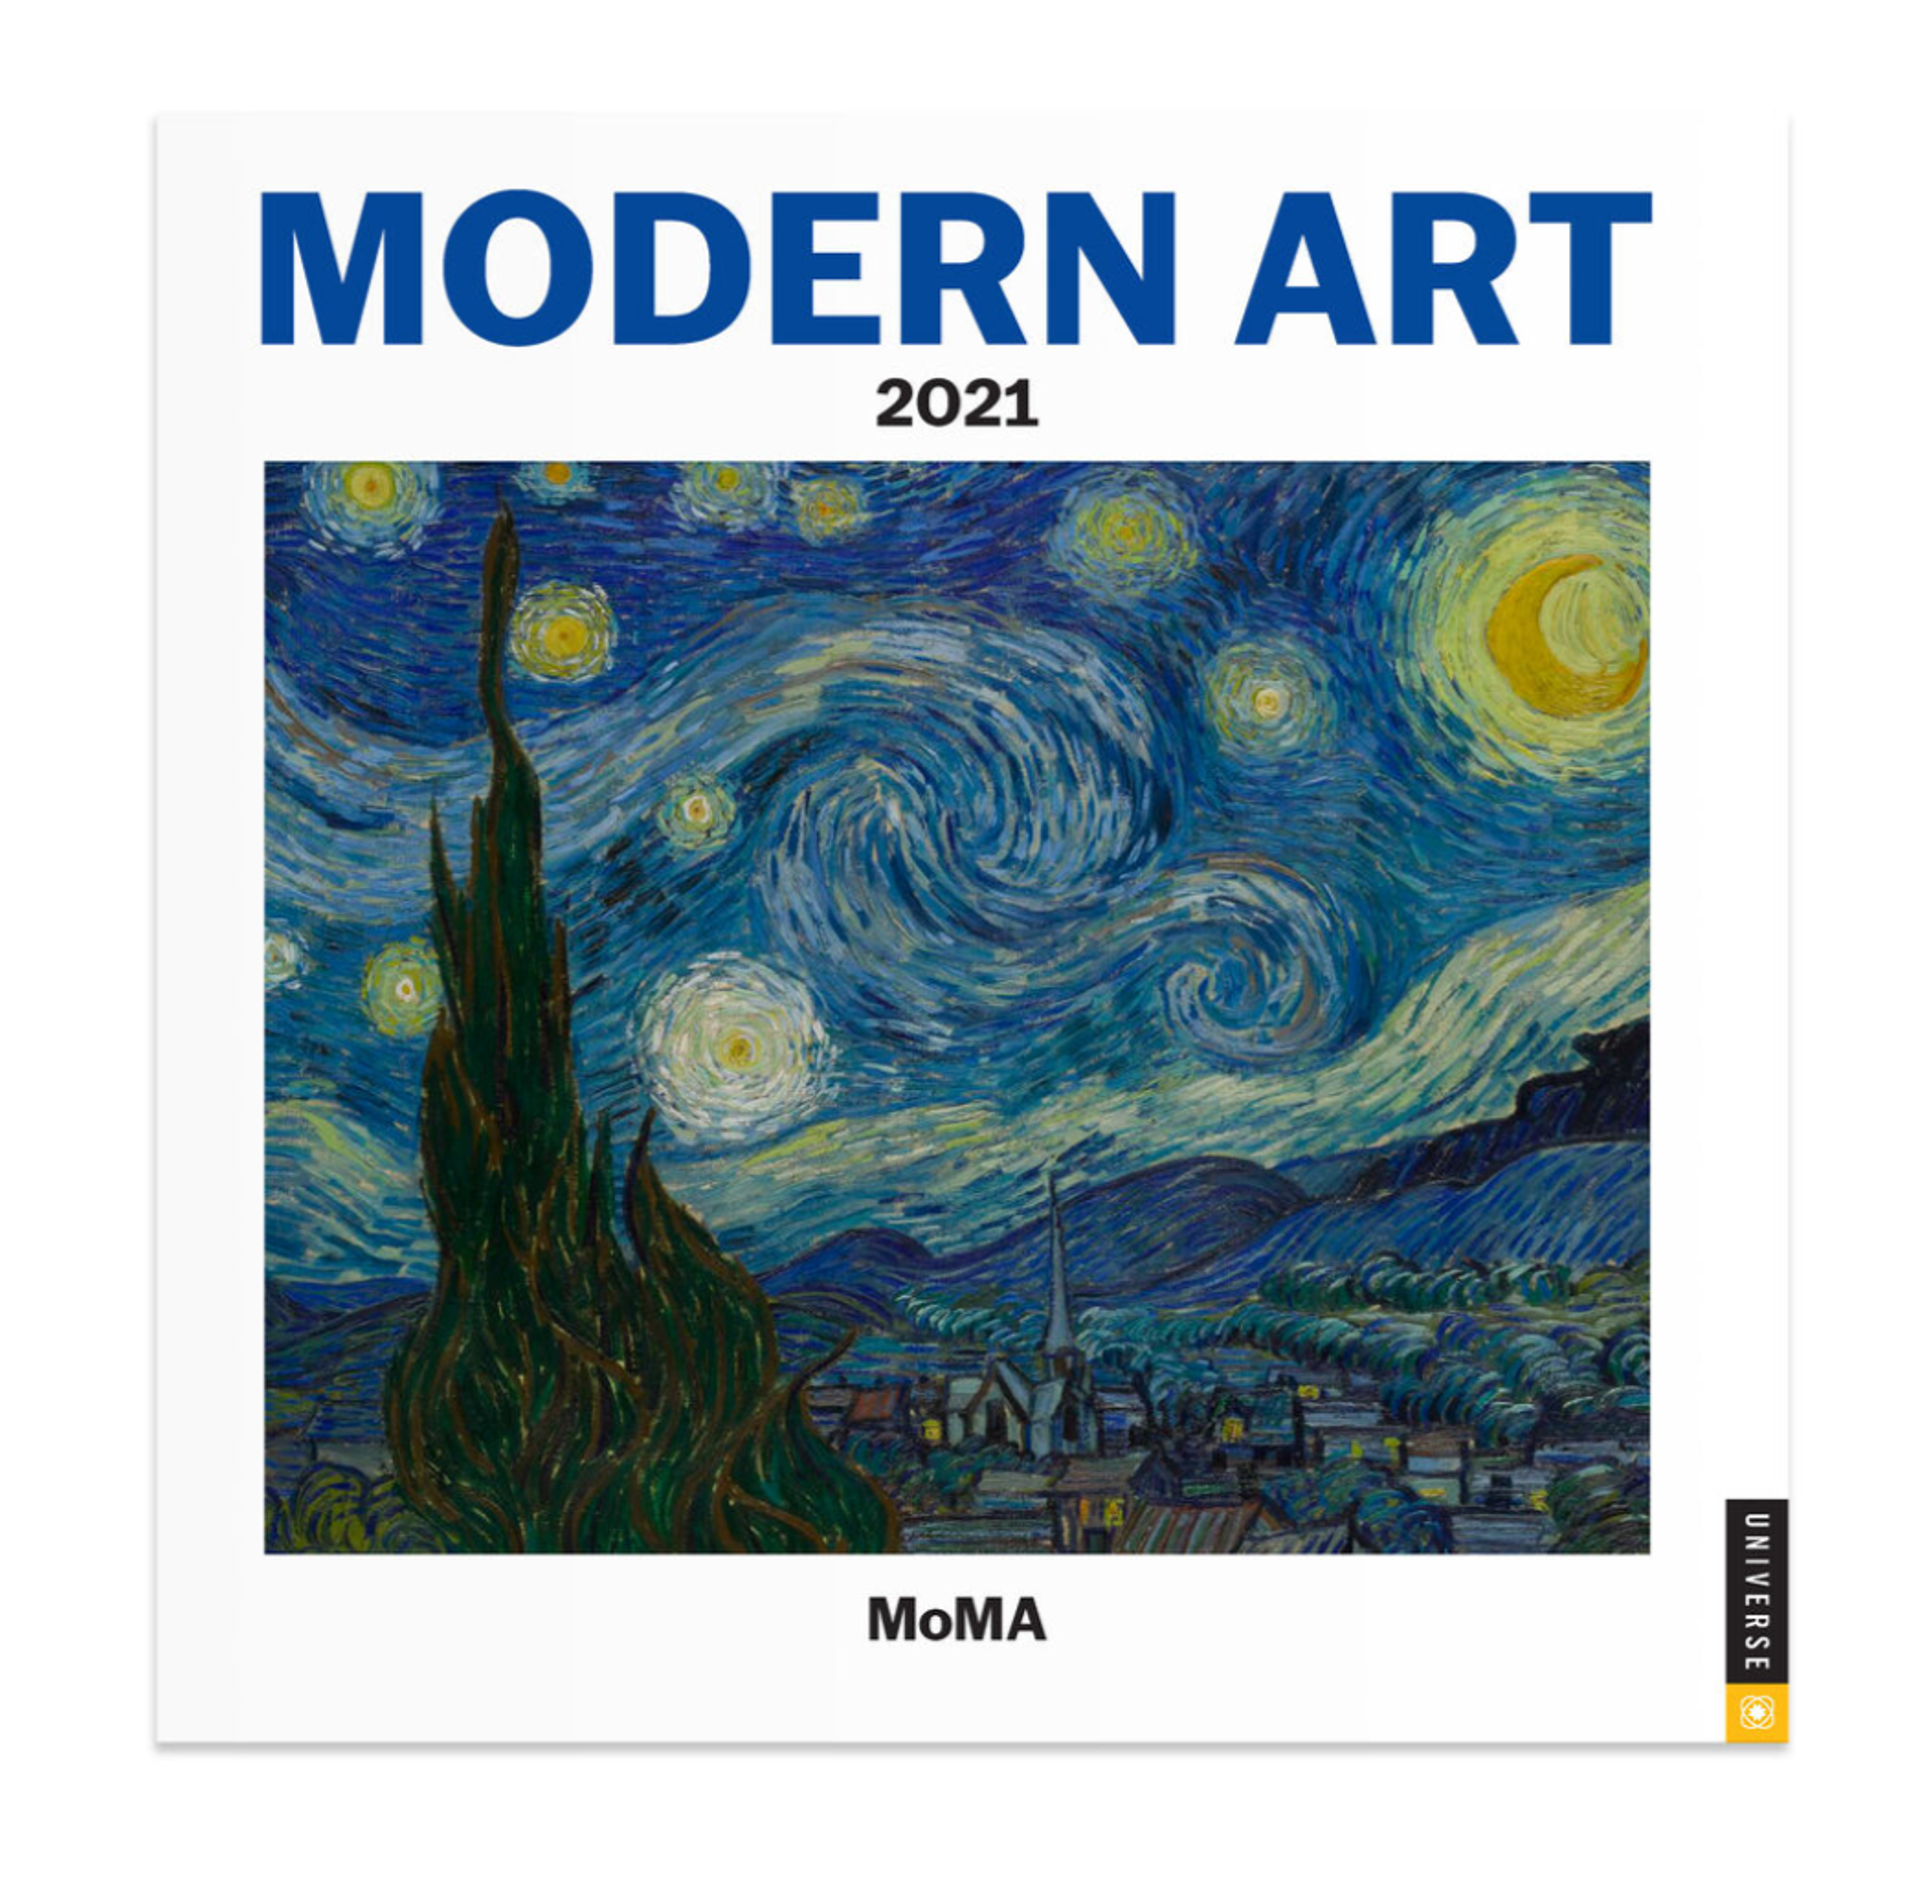 2021 MoMa Modern Art Wall Calendar